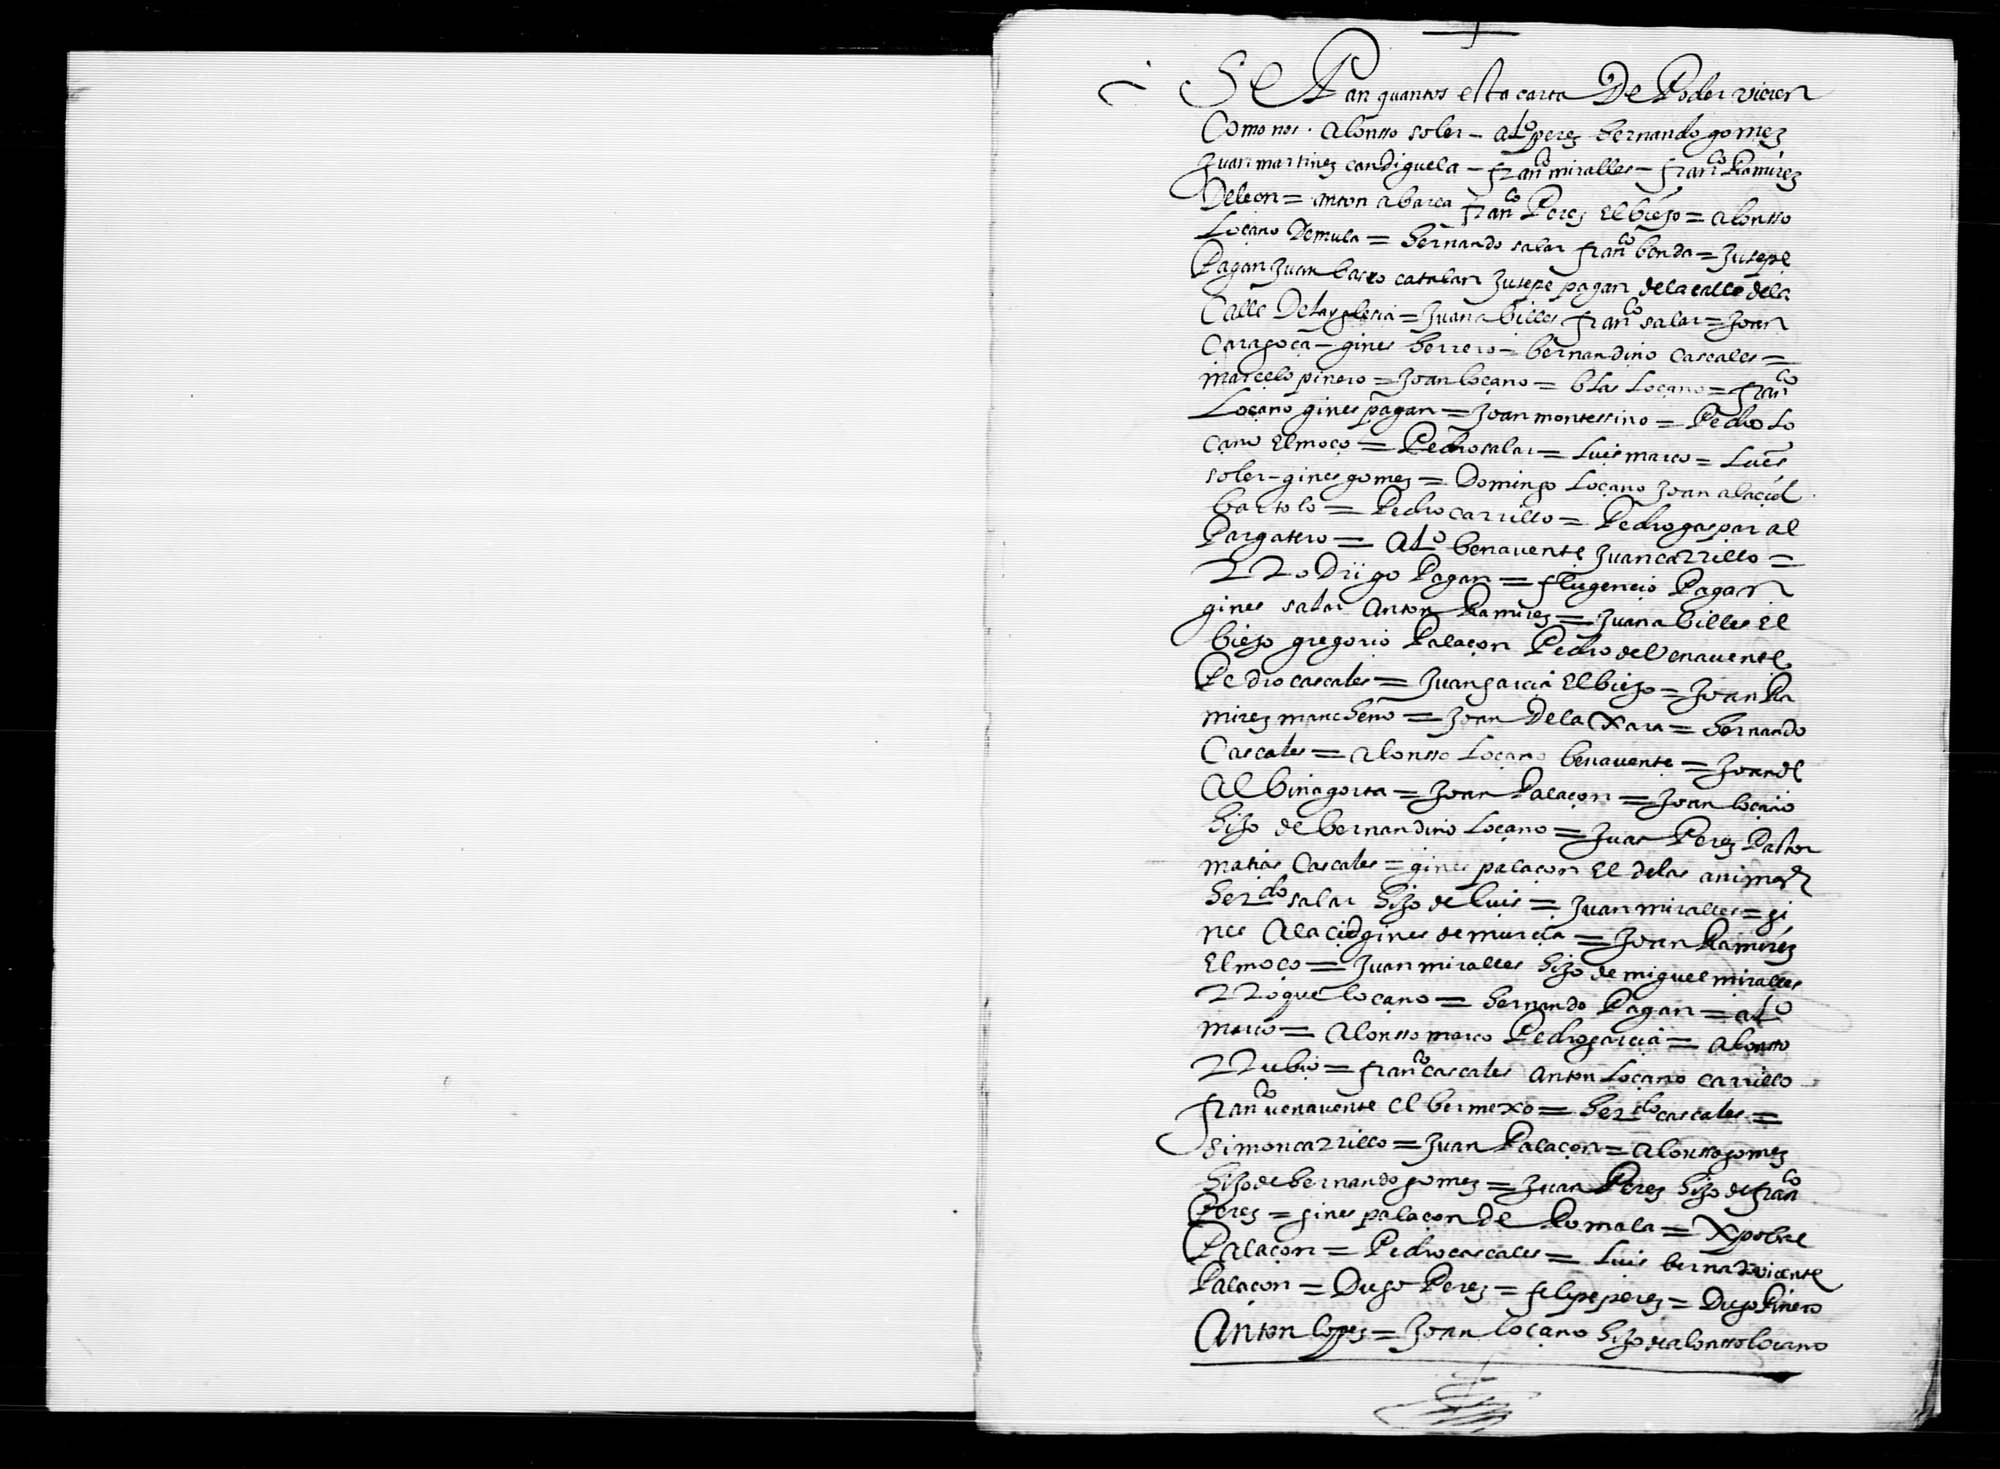 Carta de poder de numerosos vecinos de Fortuna para concertar la compra de su jurisdicción.